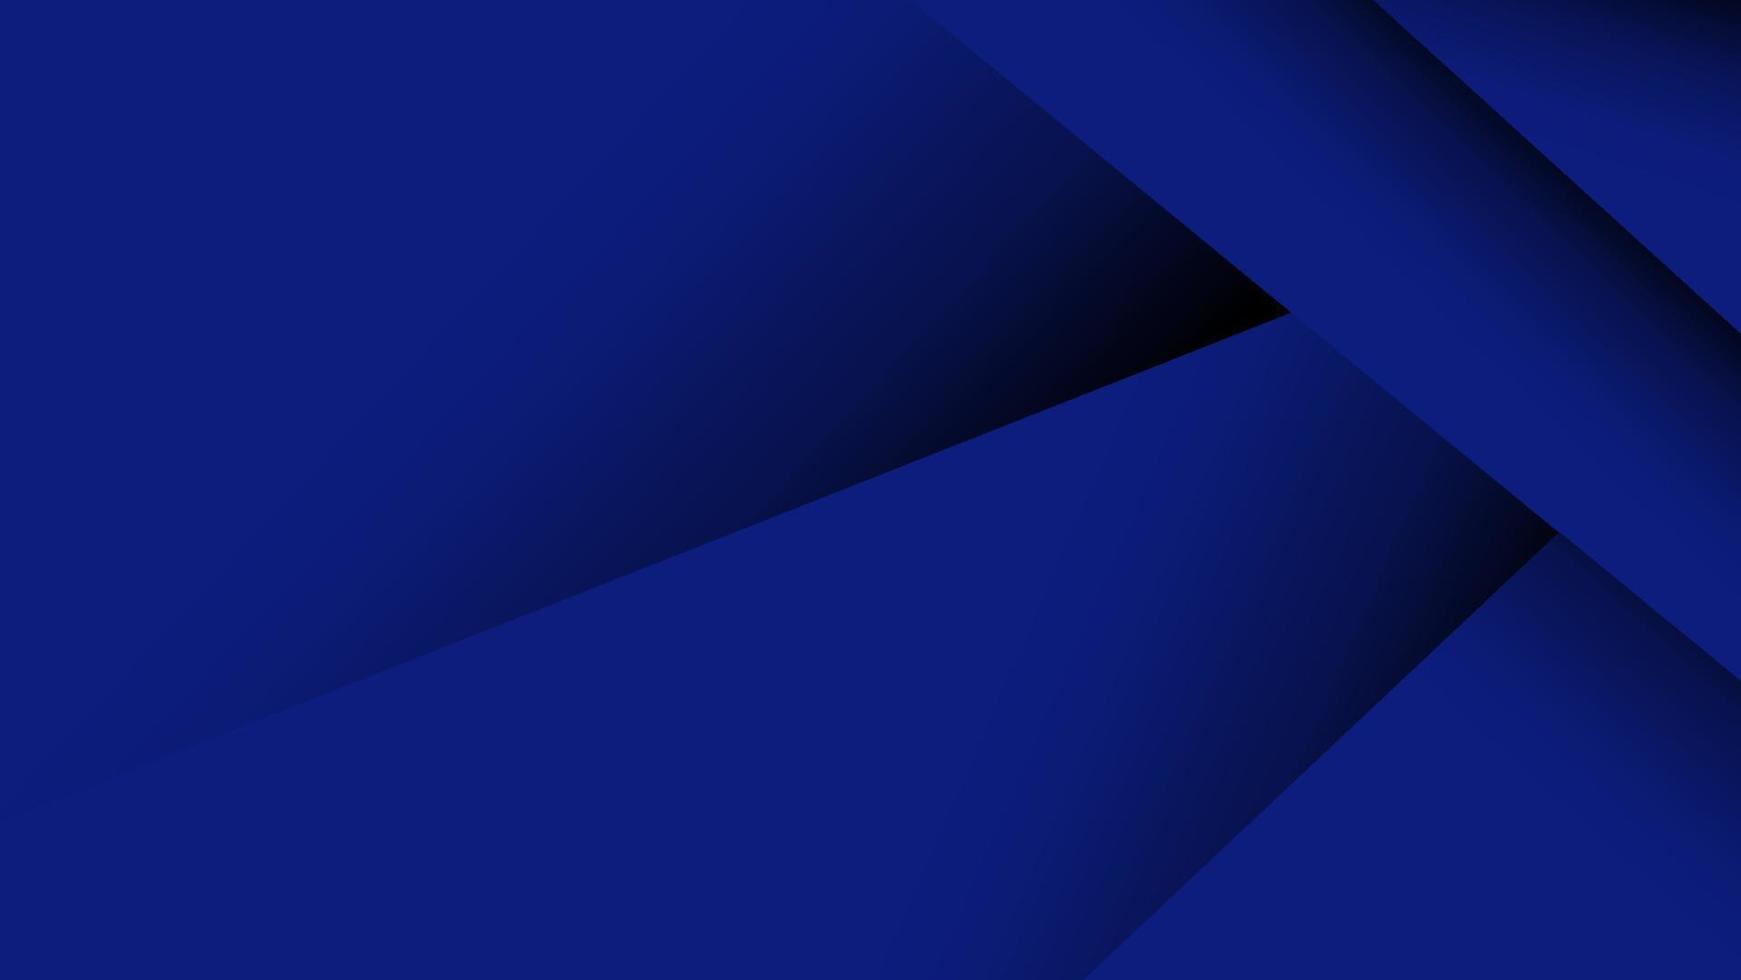 abstrakte blaue überlappung geometrische form mit verlaufsfarbhintergrund vektor